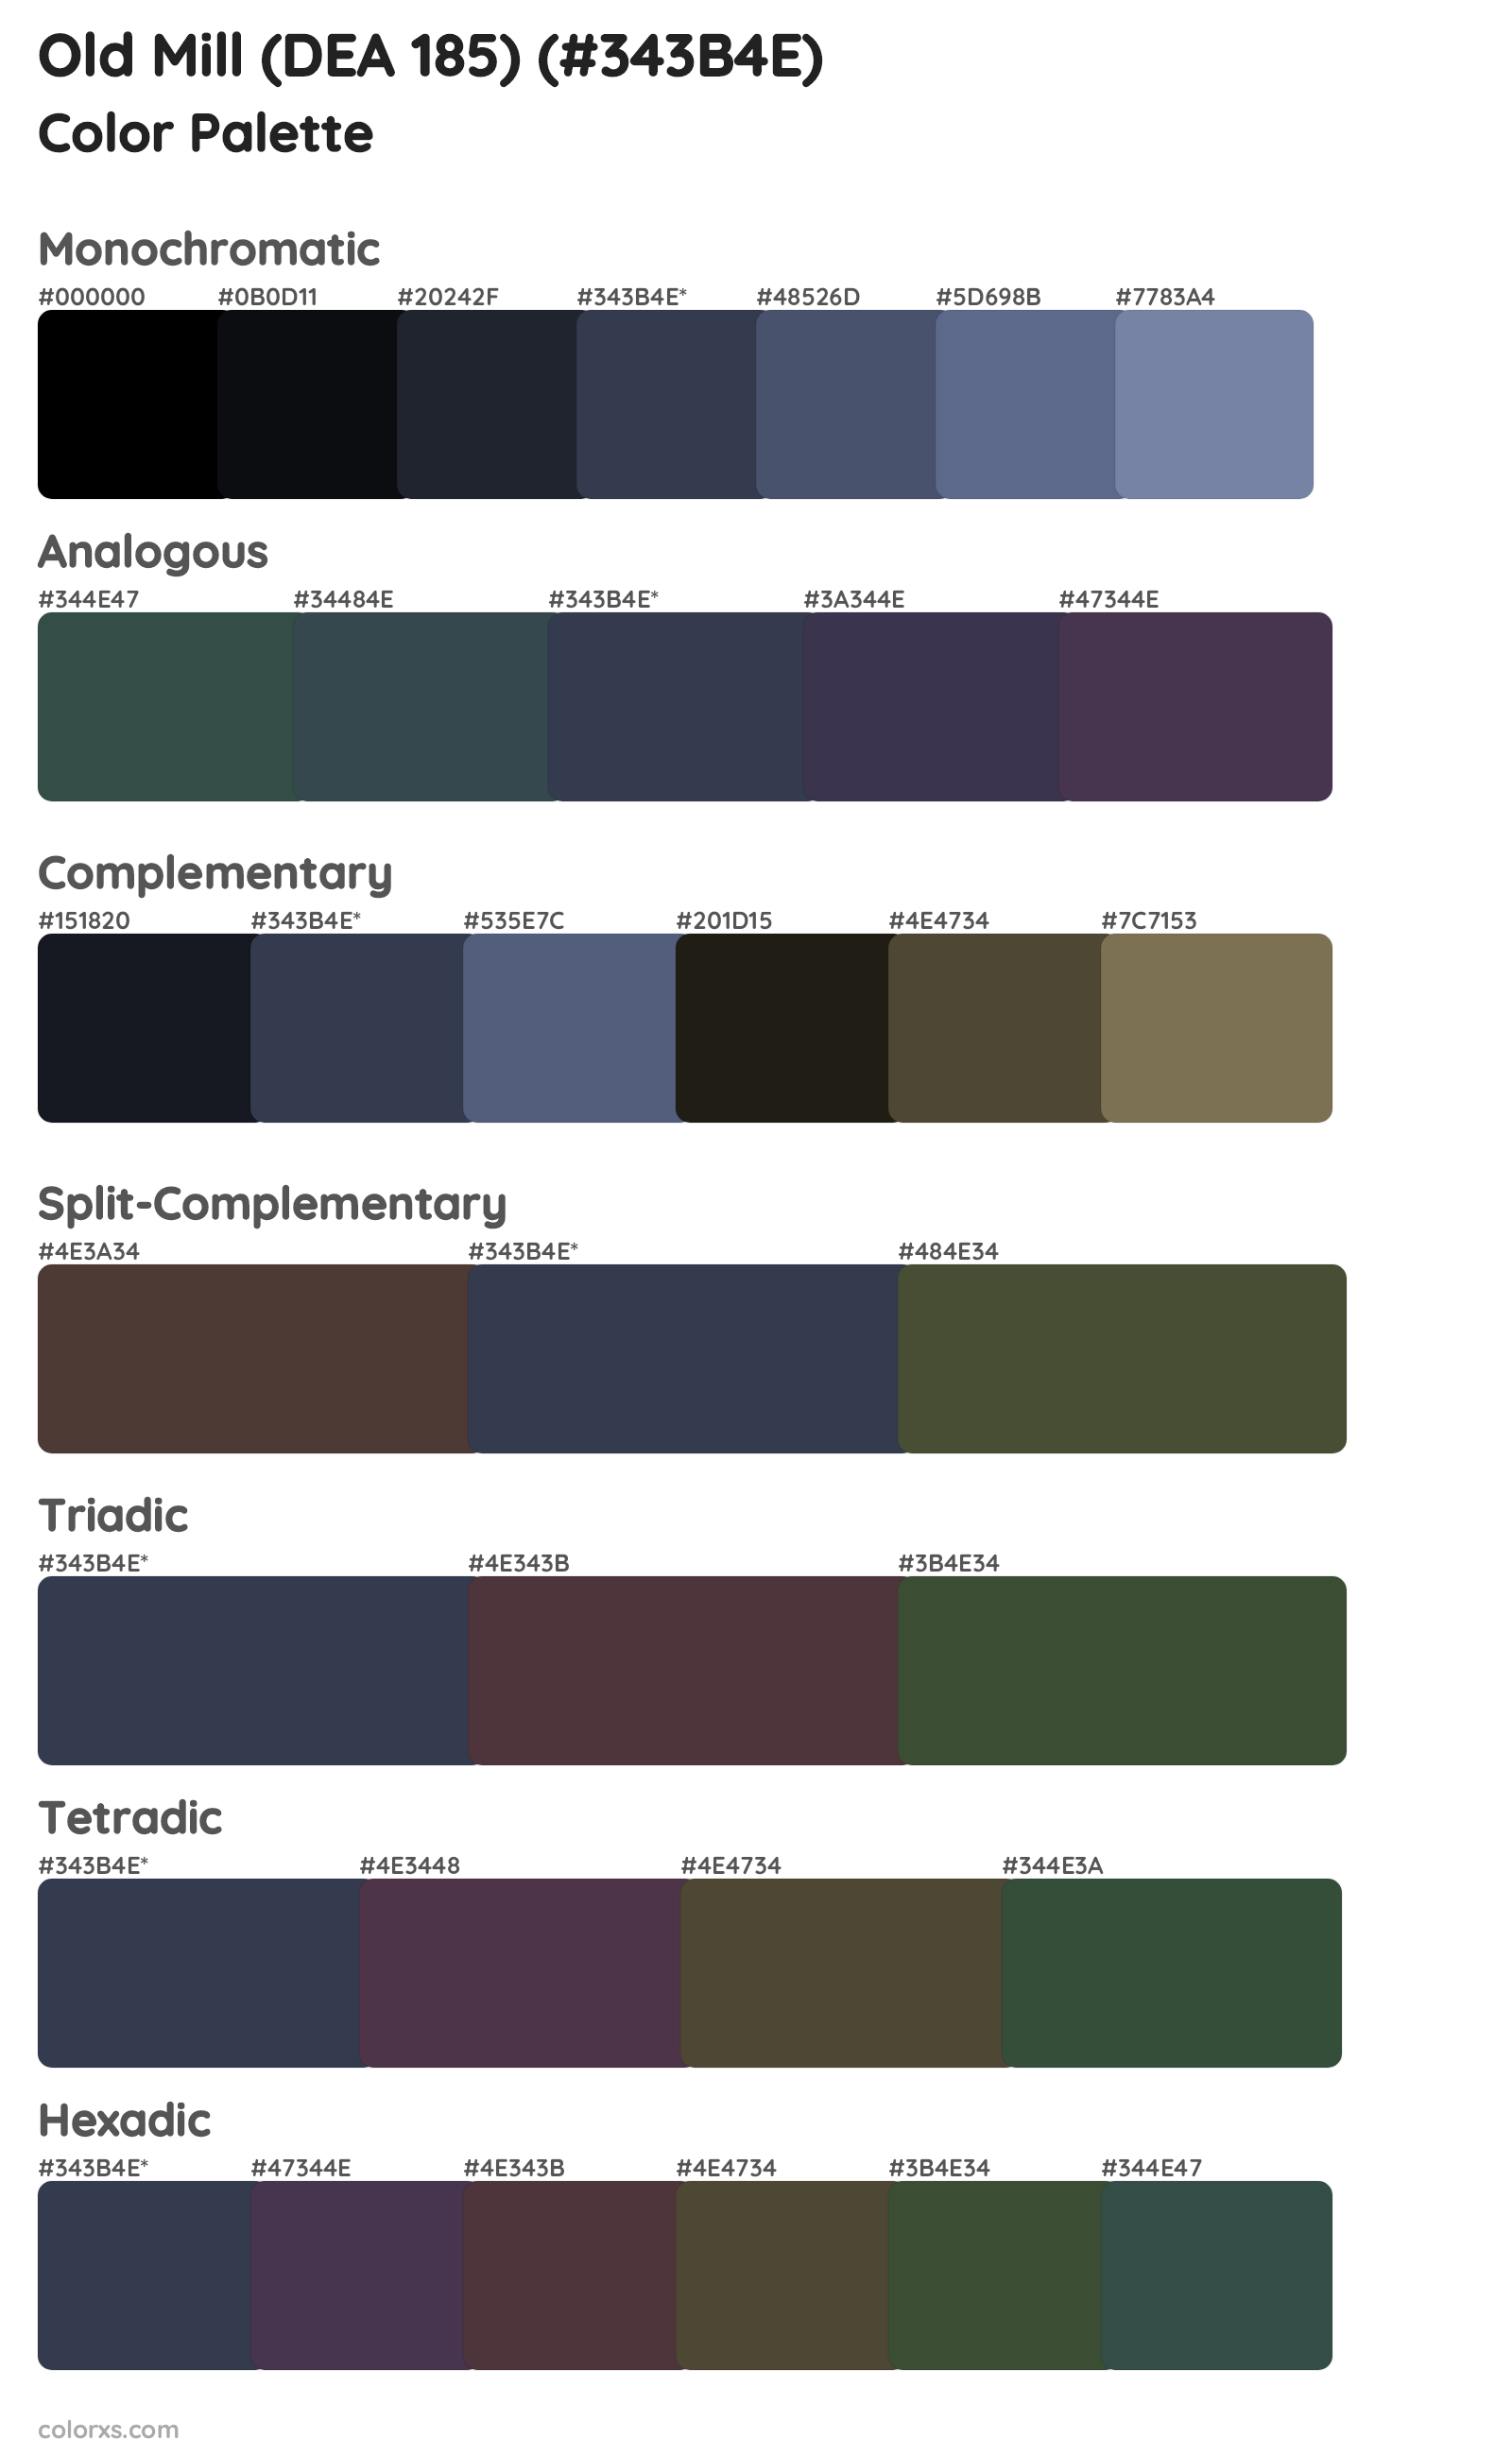 Old Mill (DEA 185) Color Scheme Palettes